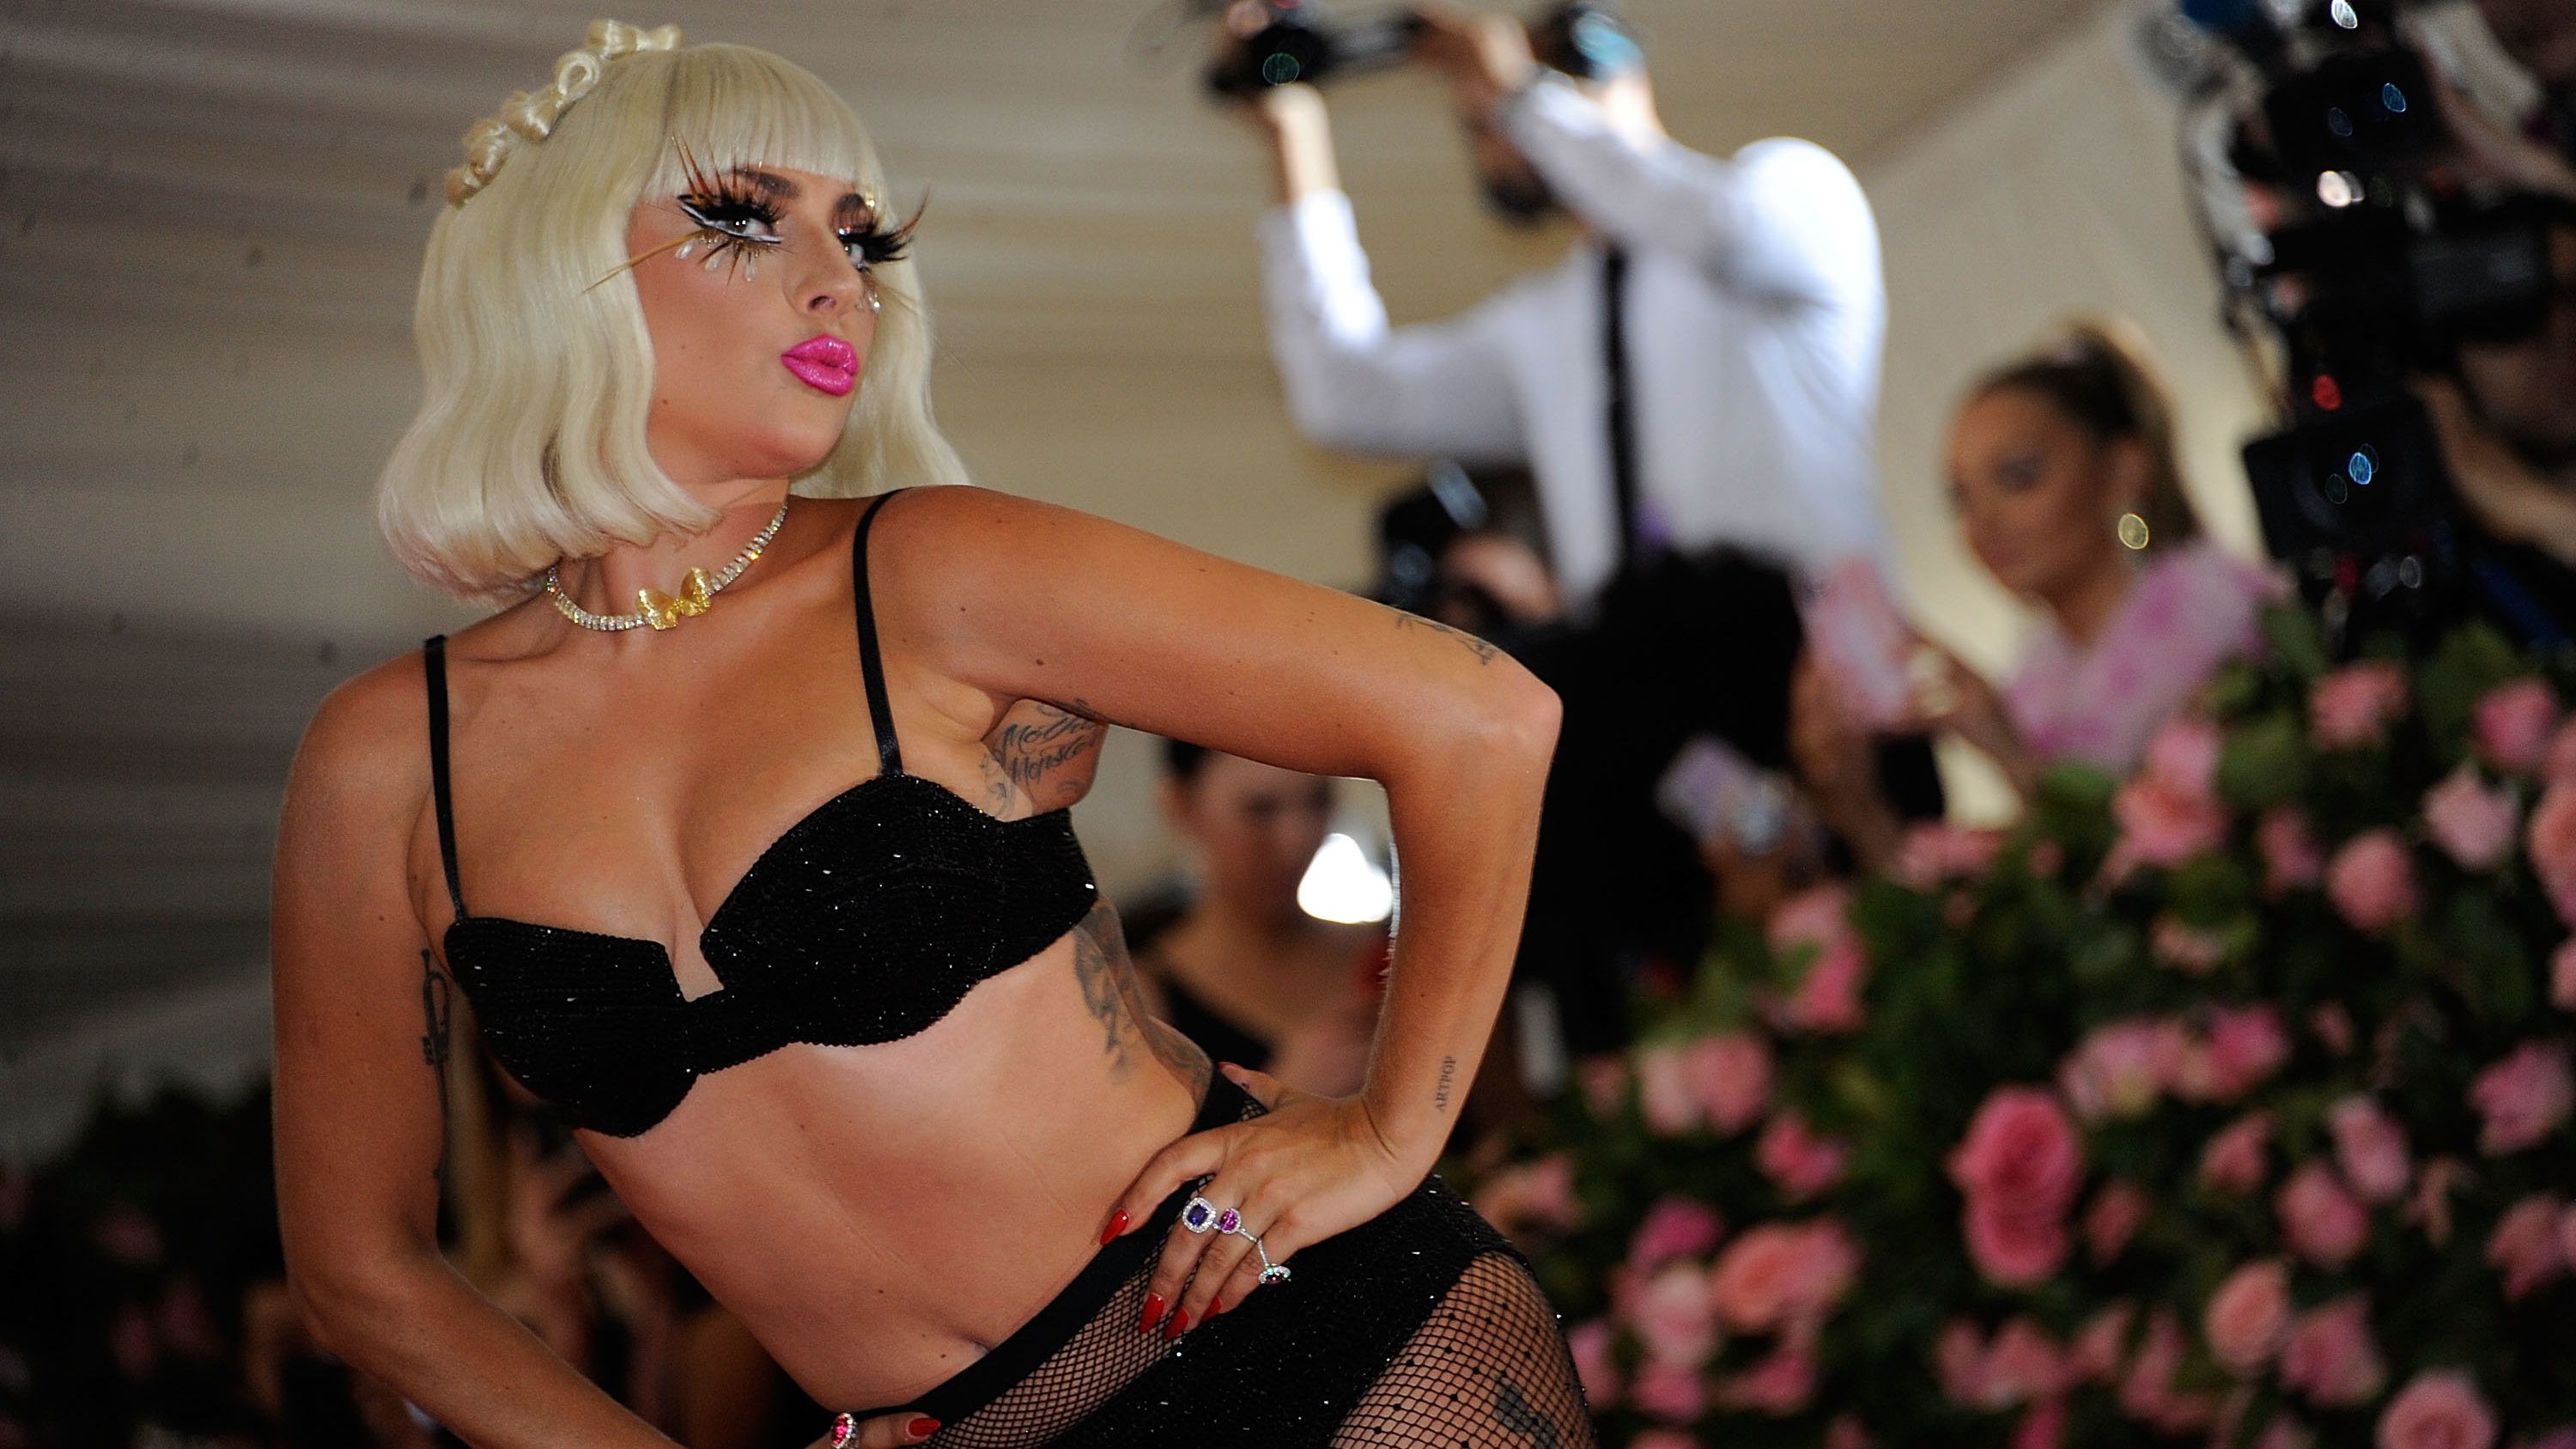 Met 2019: Lady Gaga akkora szoknyában érkezett, hogy az egész rendezvény aláfért volna, aztán melltartóra vetkőzött